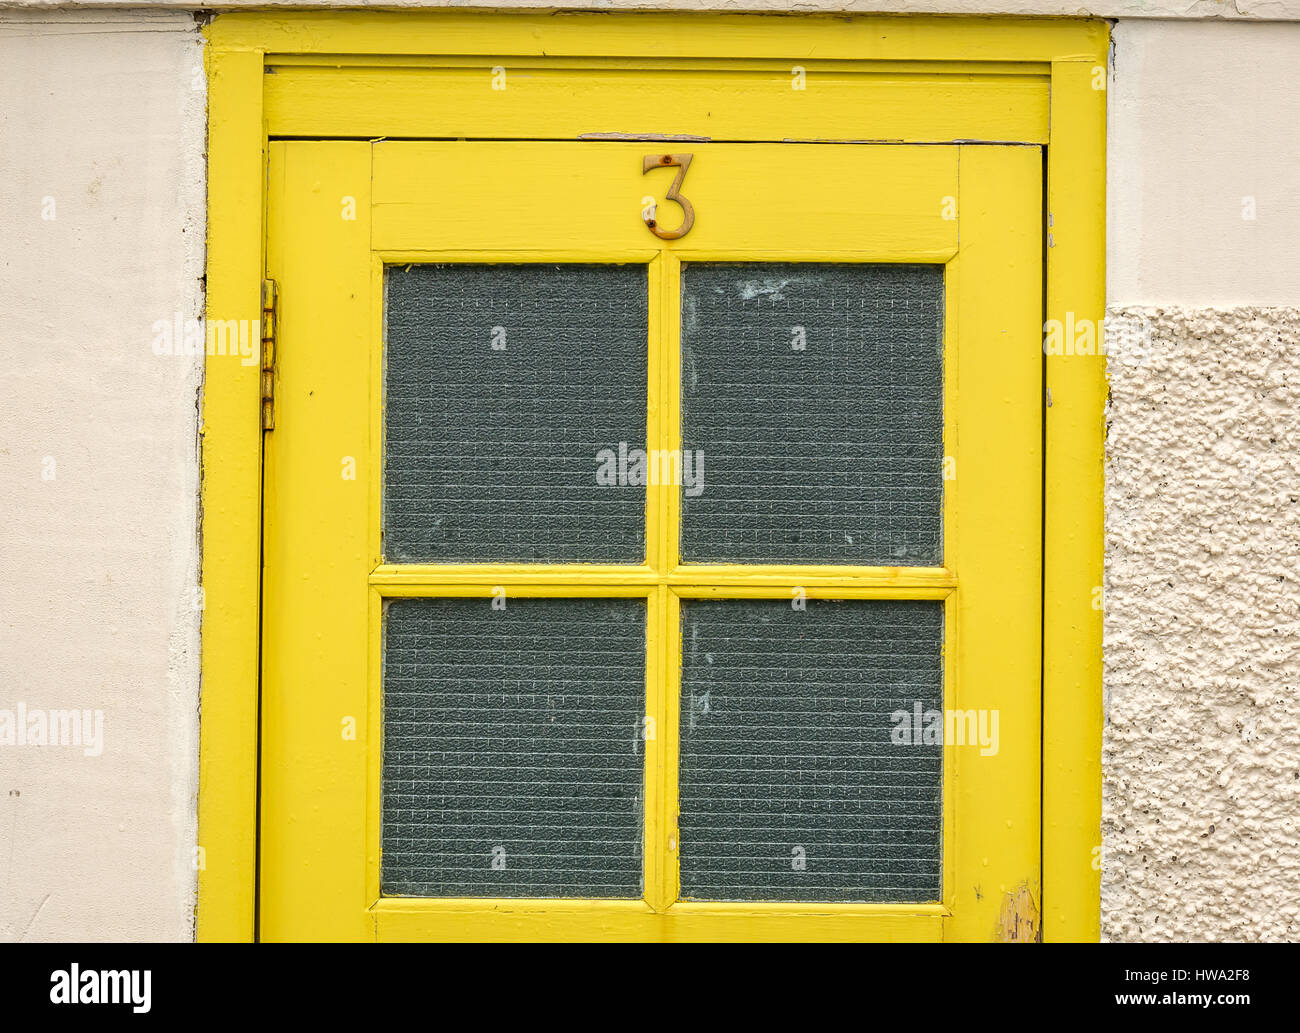 Nahaufnahme eines alten Gelb lackiert Tür mit einer Nummer drei und Fensterscheiben in einer Stadt am Meer, North Berwick, East Lothian, Schottland, Großbritannien Stockfoto